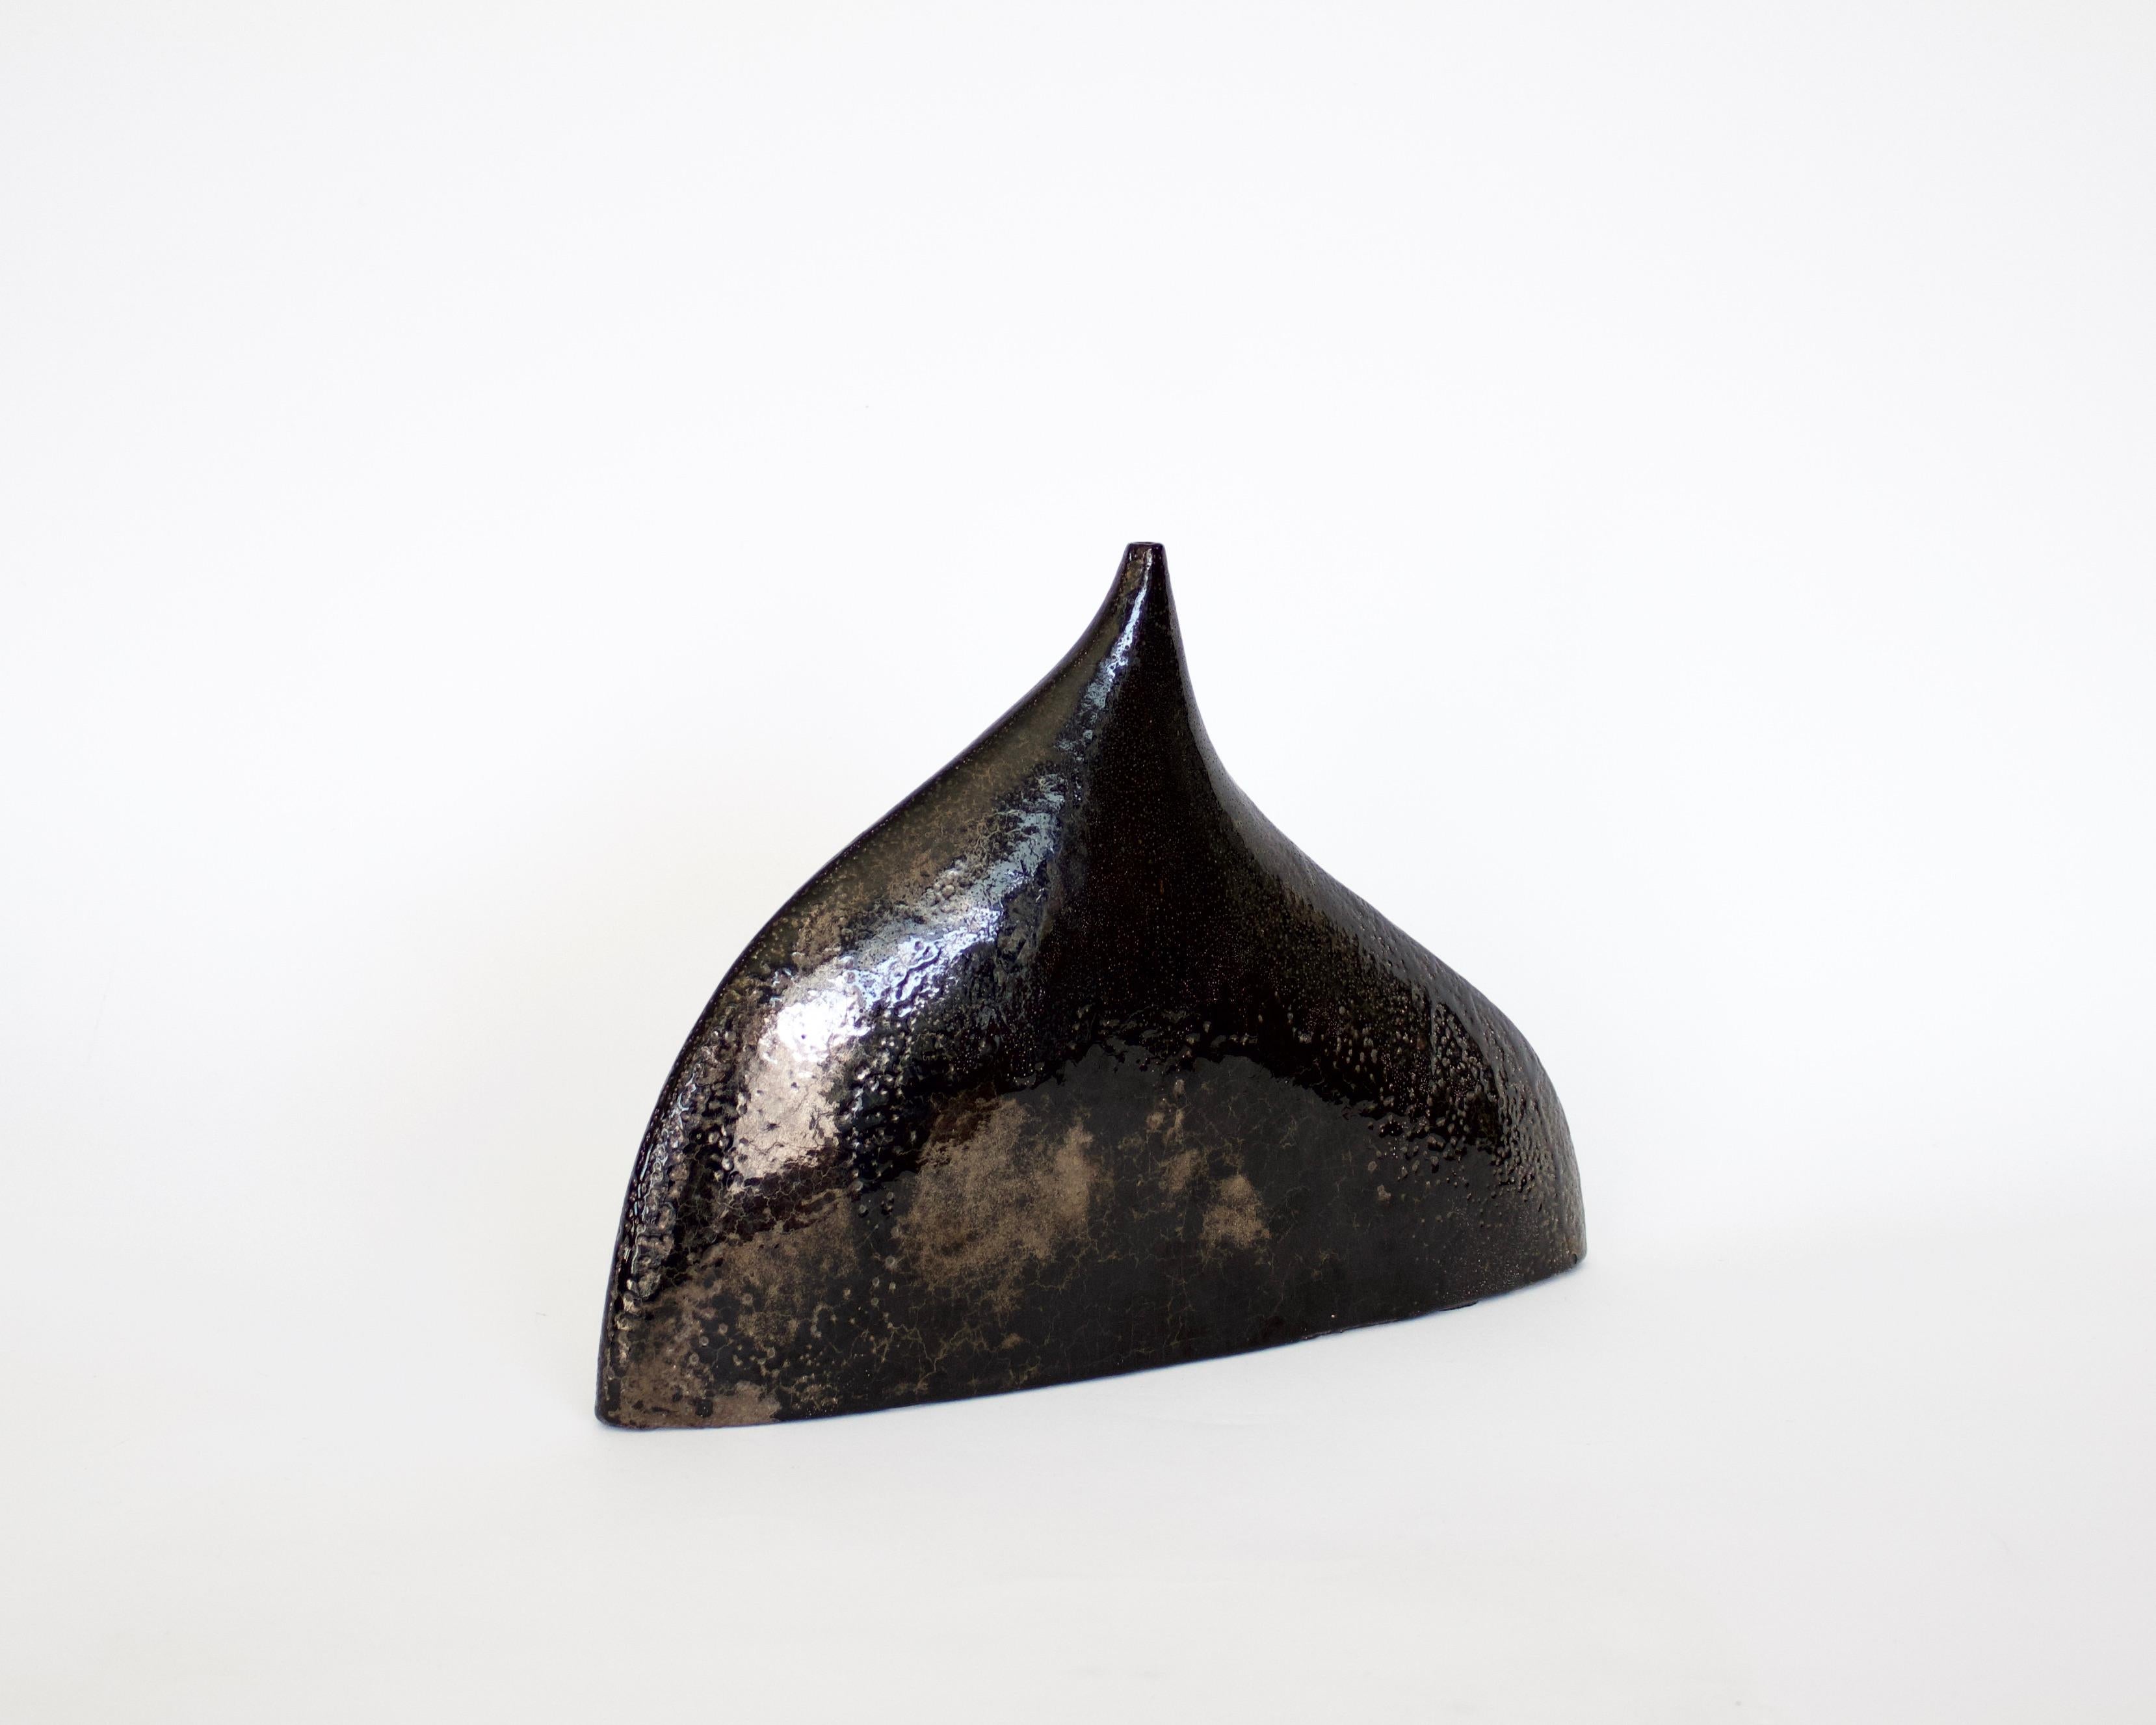 Andre Aleth Masson Französische Keramik-Skulptur Vase in einem leuchtenden braunen Schwarz mit kupferfarbenen Reflexen. C1966.
Ähnlich wie der auf dem Foto in dem Buch Andre Aleth Masson von Thomas Leporrier, S. 183.